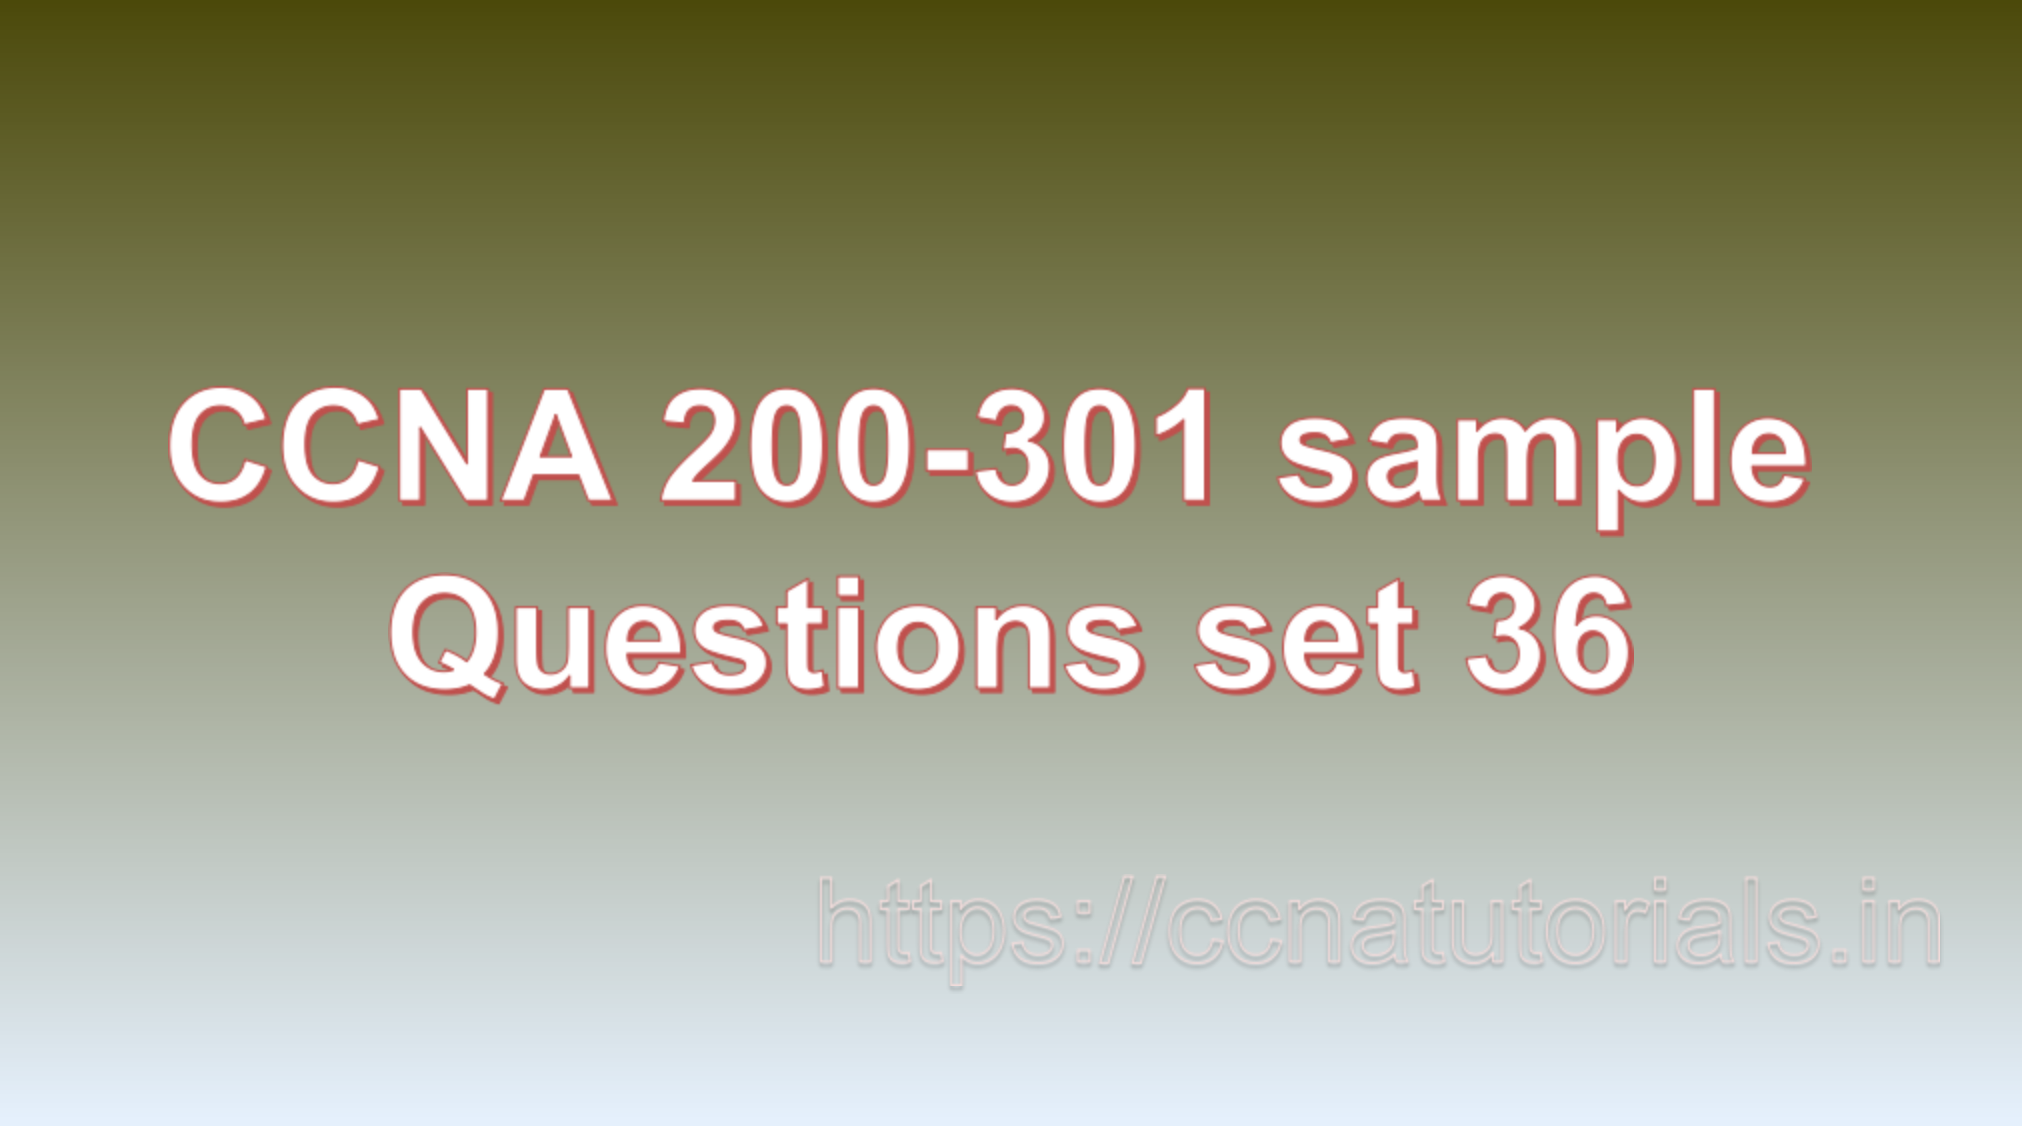 ccna sample questions set 36, ccna tutorials, CCNA Exam, ccna